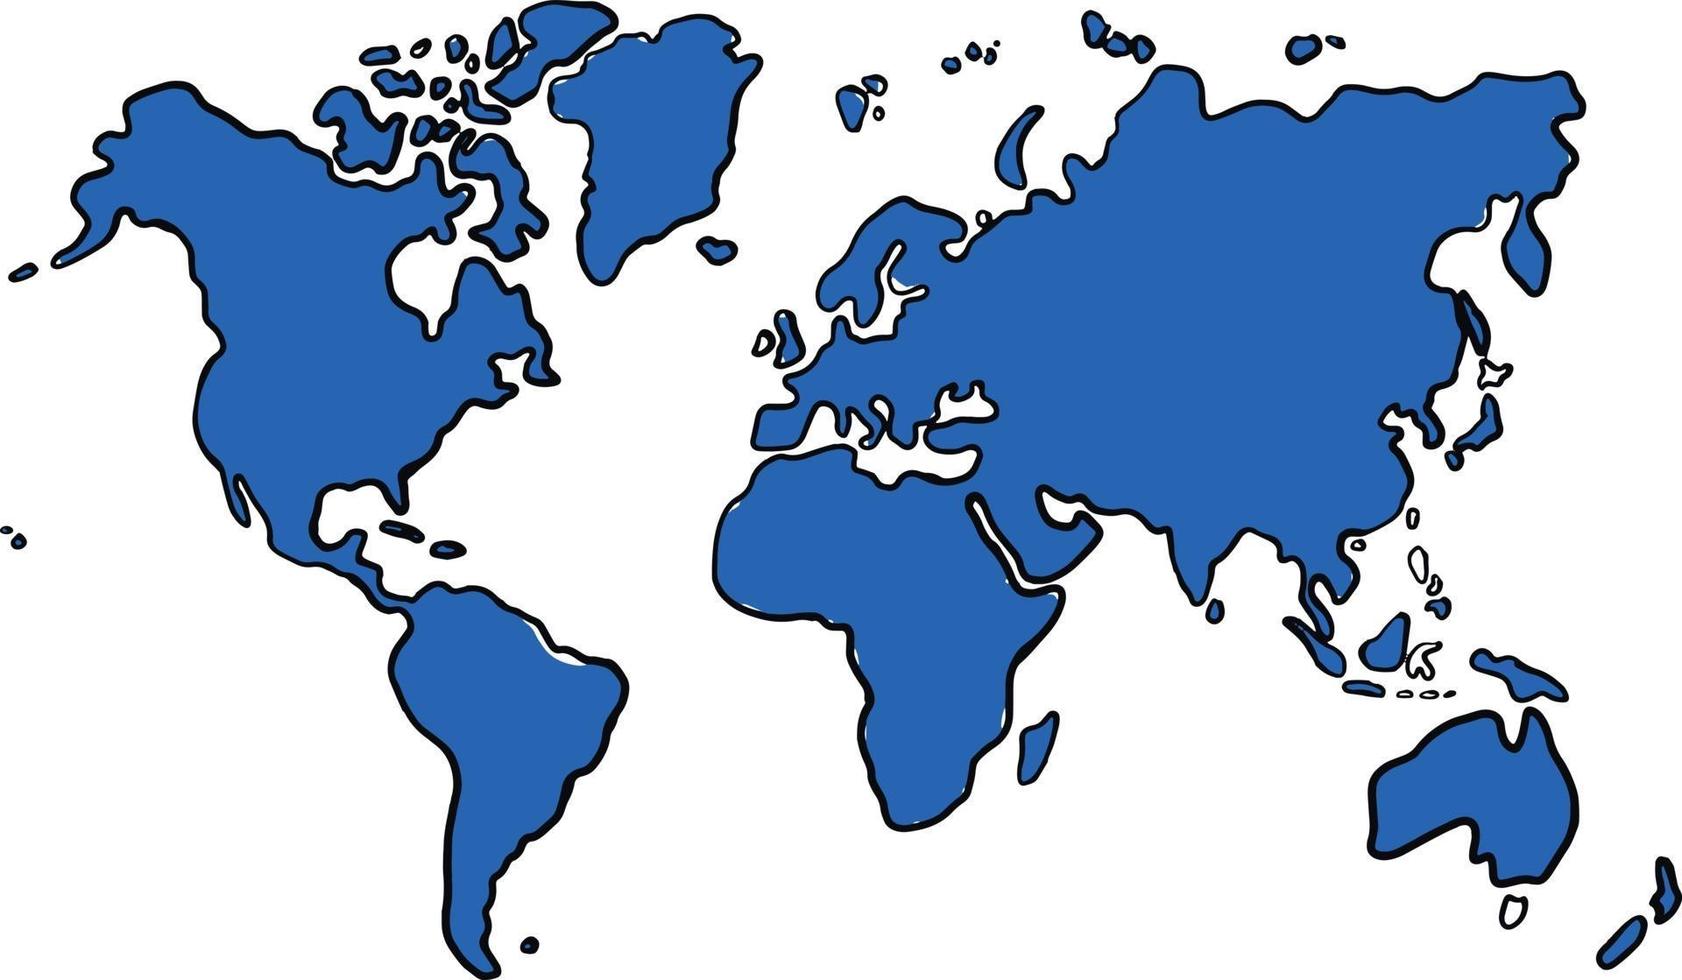 Bosquejo del mapa del mundo a mano alzada sobre fondo blanco. ilustración vectorial. vector